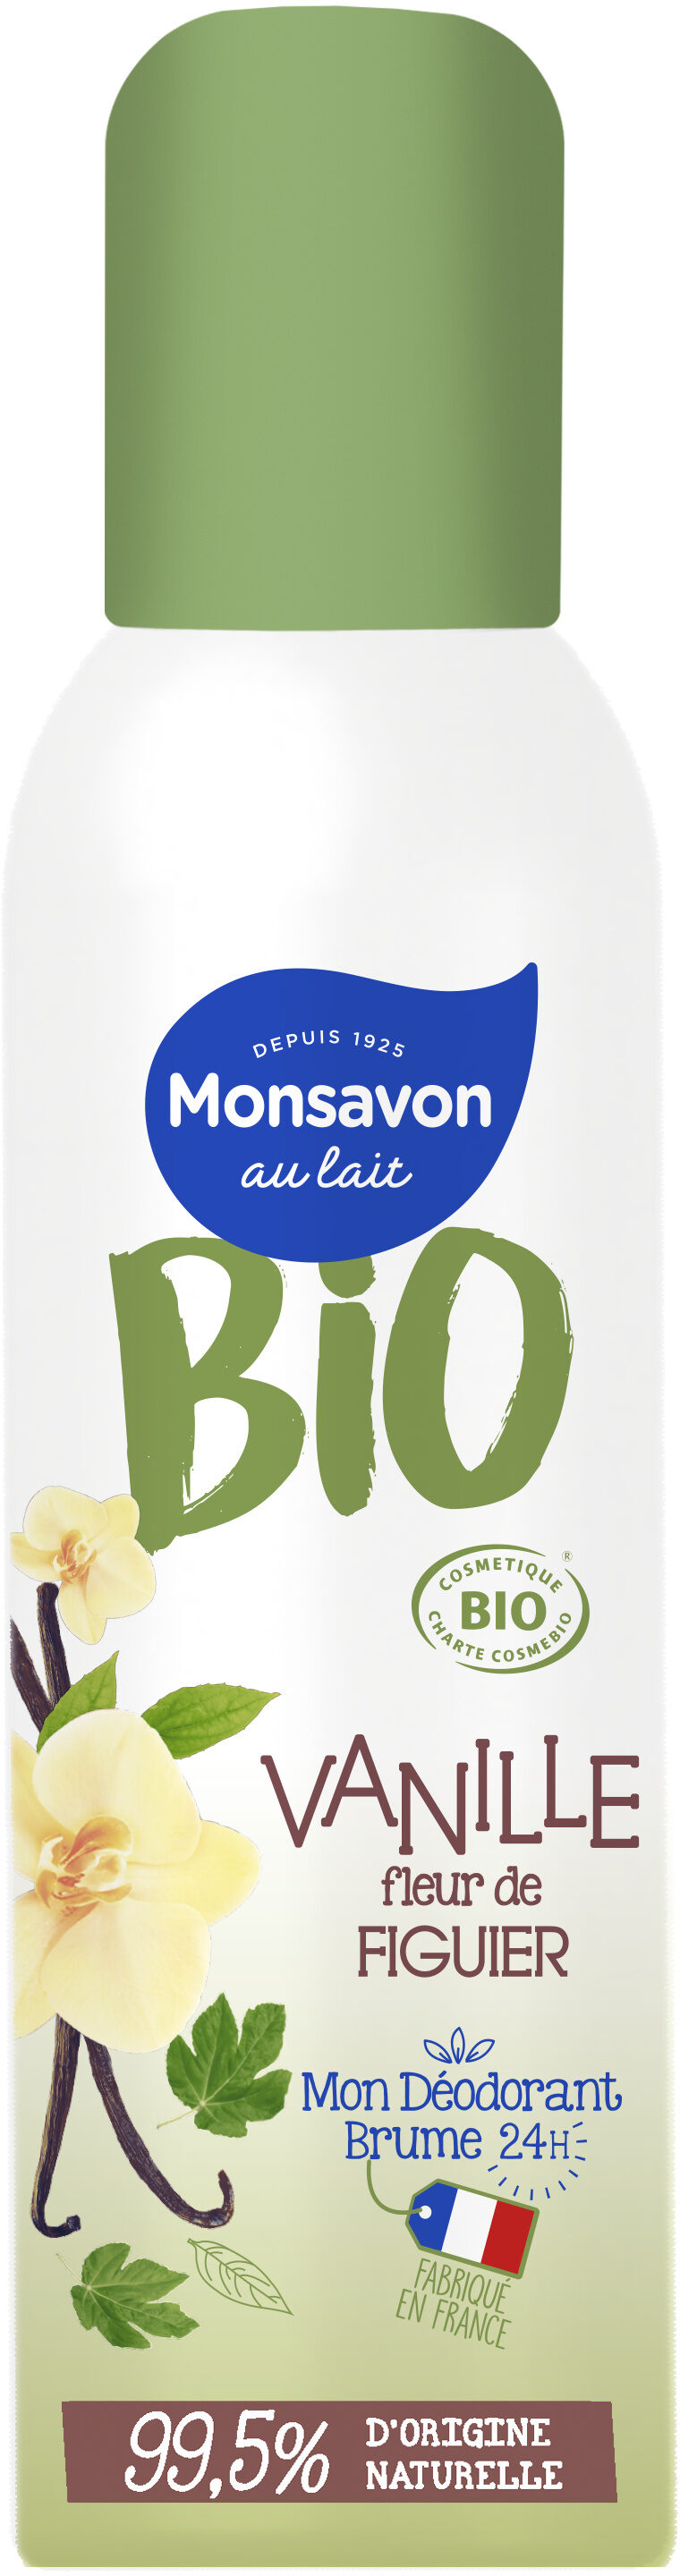 Monsavon Bio Déodorant Femme Brume Vanille fleur de Figuier - Produkt - fr